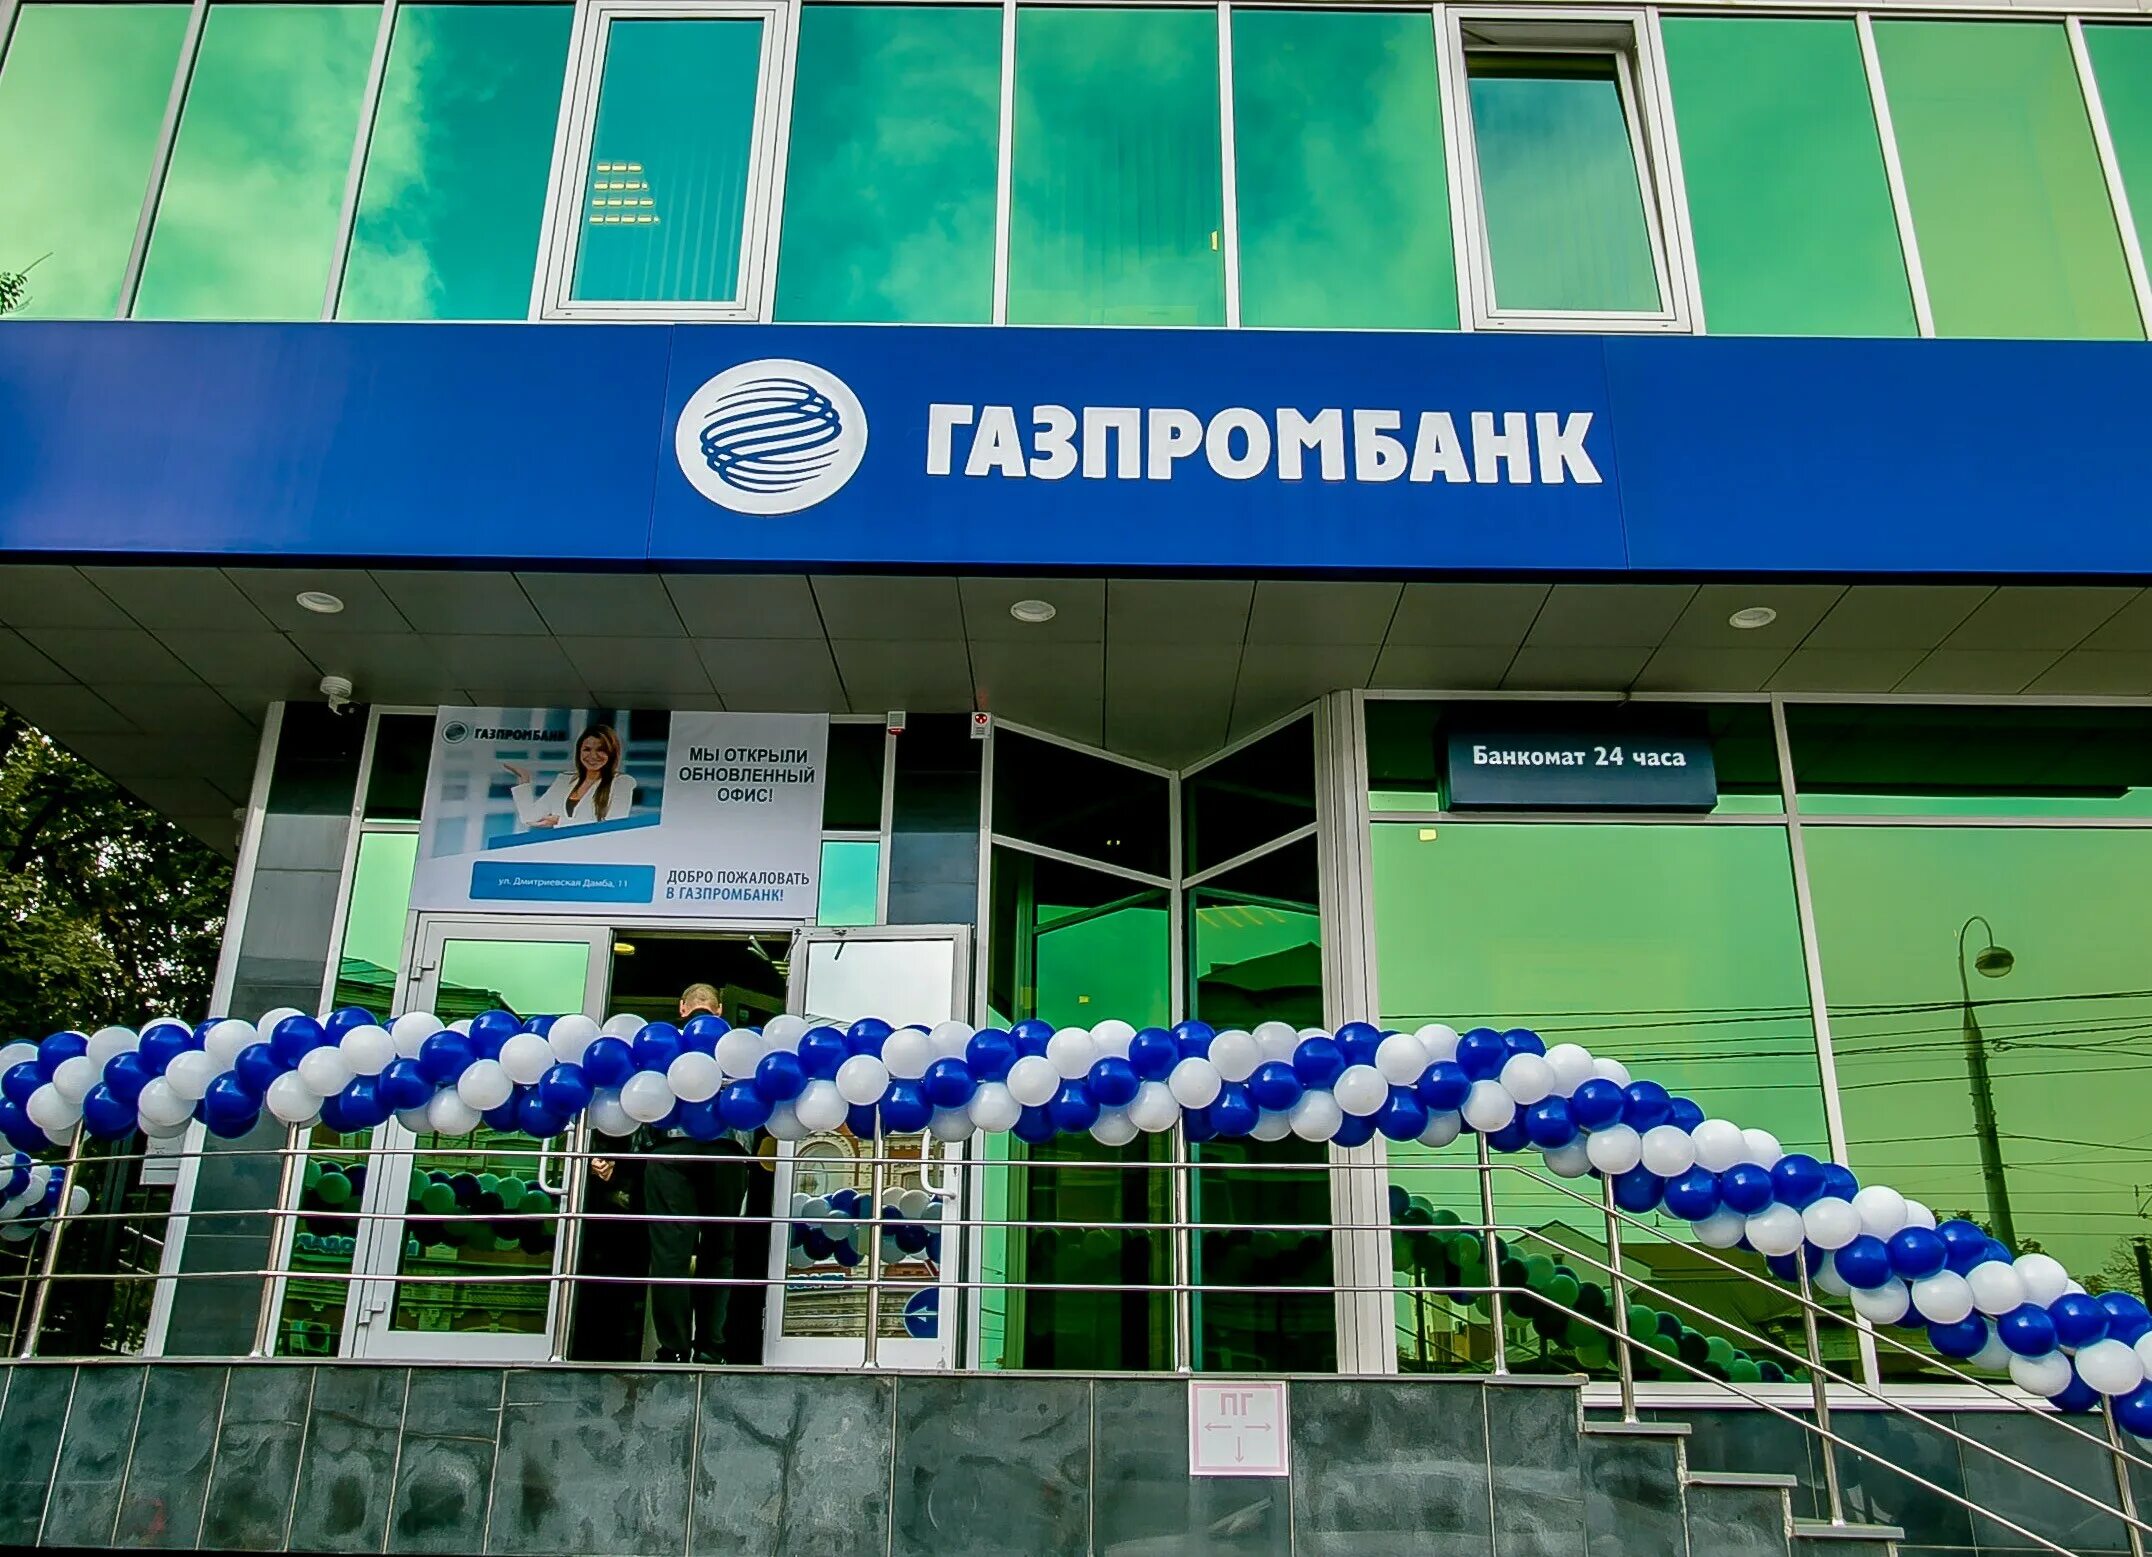 Газпромбанк офис. Газпромбанк банк логотип. Карта офисов Газпромбанка. Газпромбанк отделения. Газпромбанк краснодар телефон